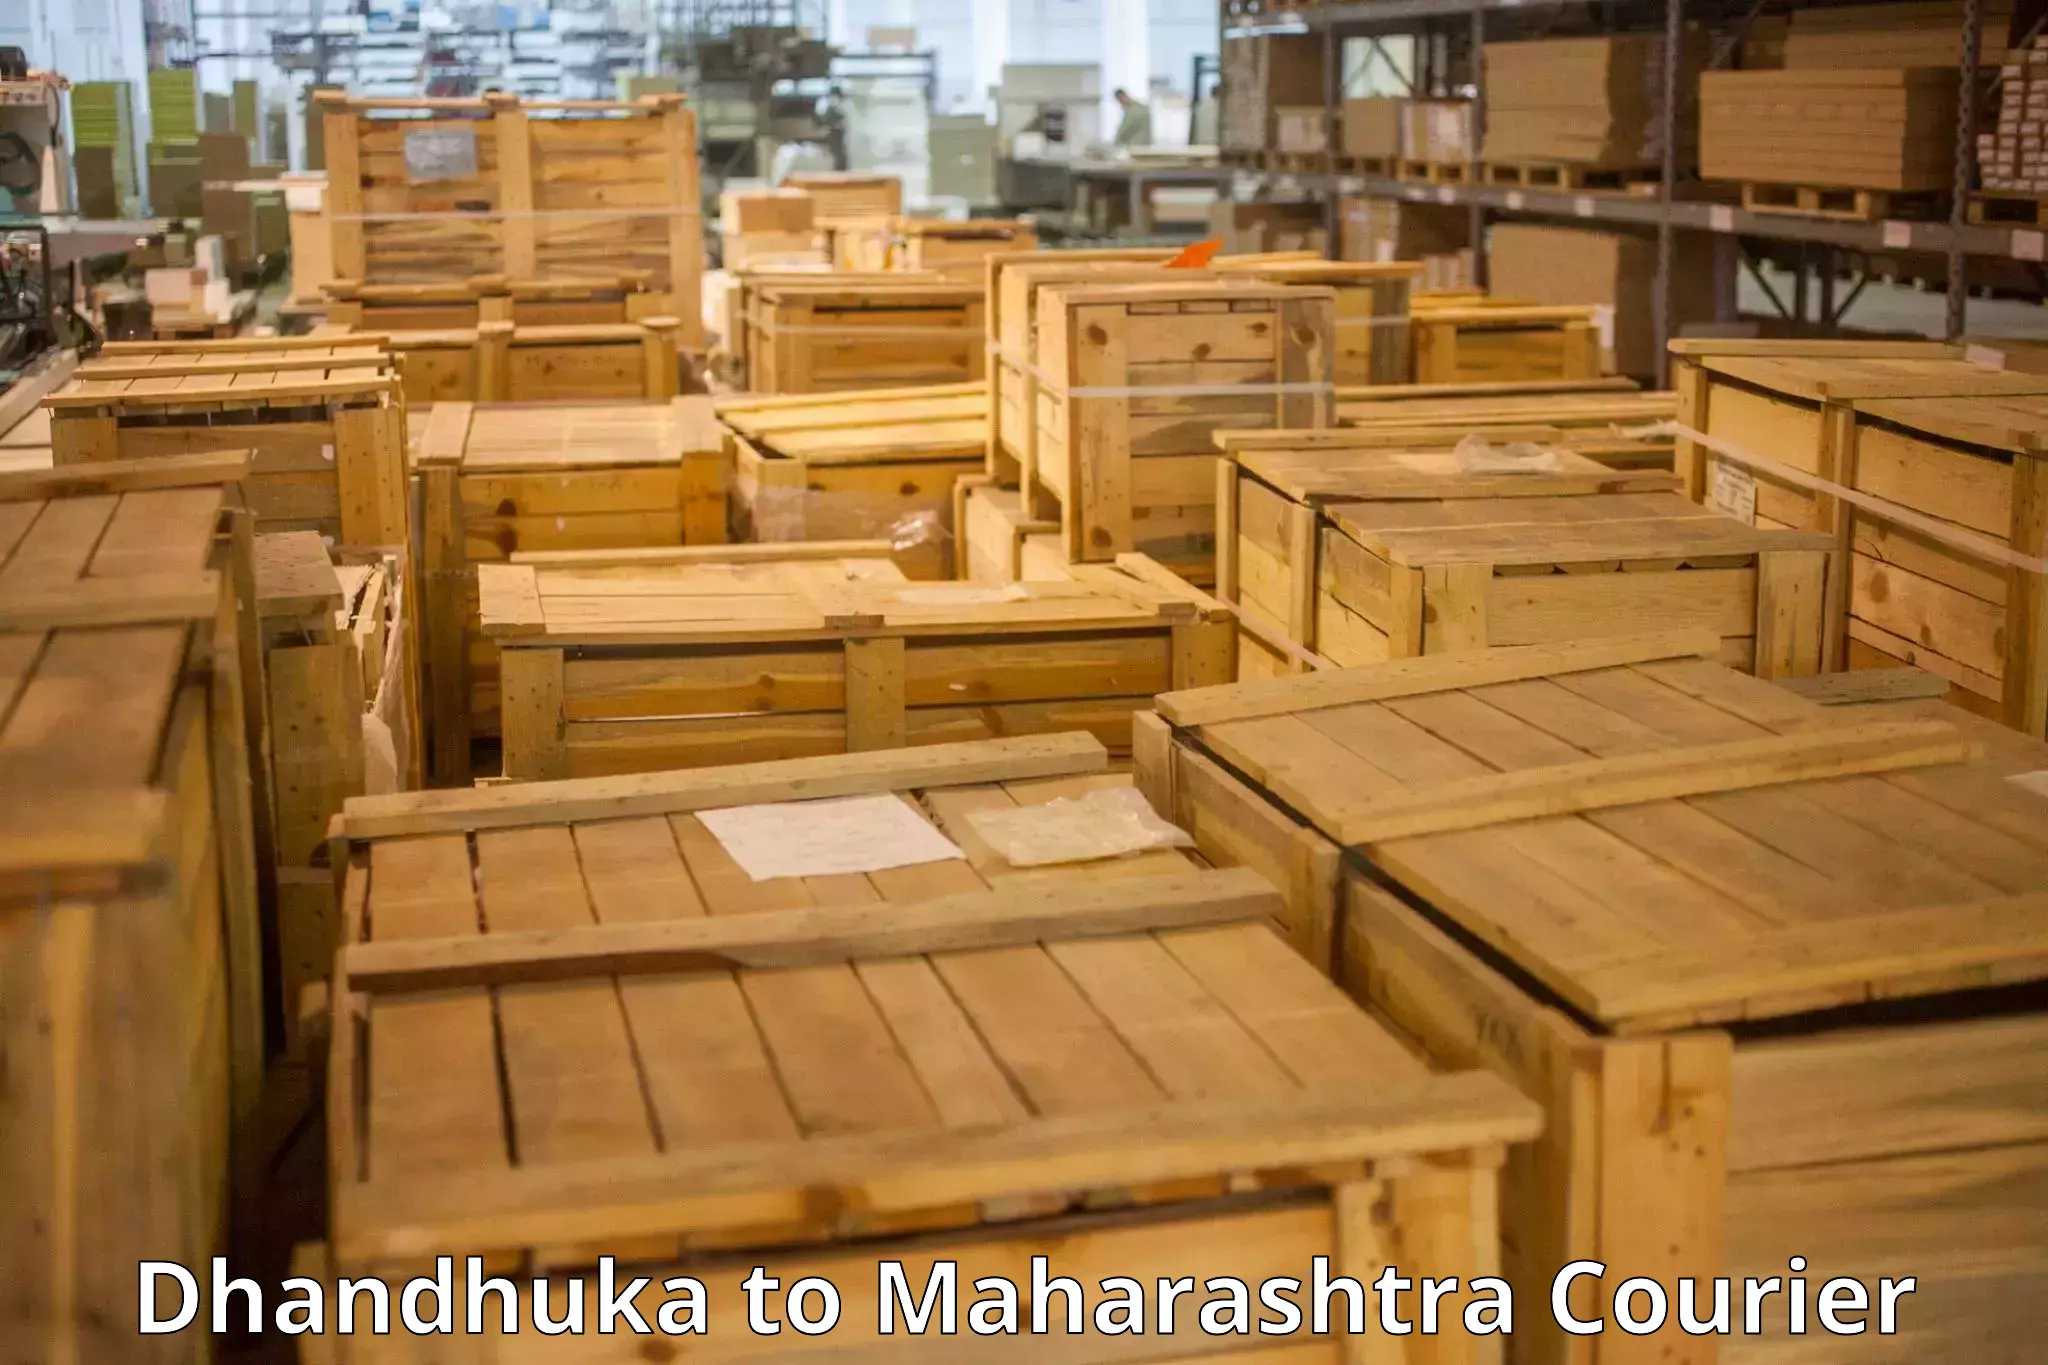 Multi-destination luggage transport Dhandhuka to Maharashtra